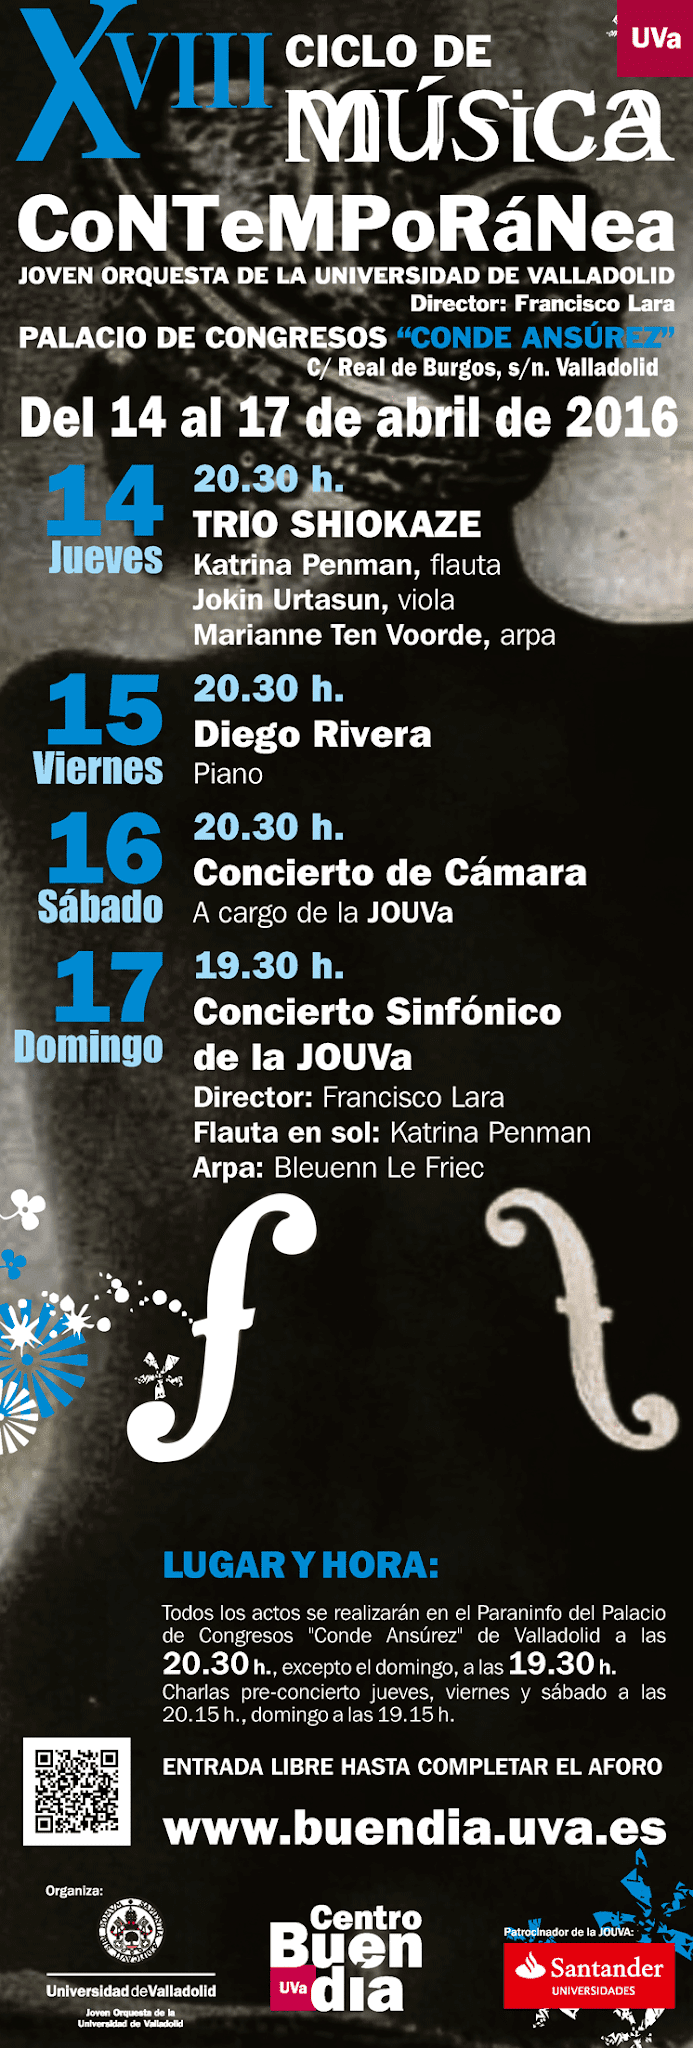 XVIII Ciclo de Música Contemporánea: Joven Orquesta de la Universidad de Valladolid